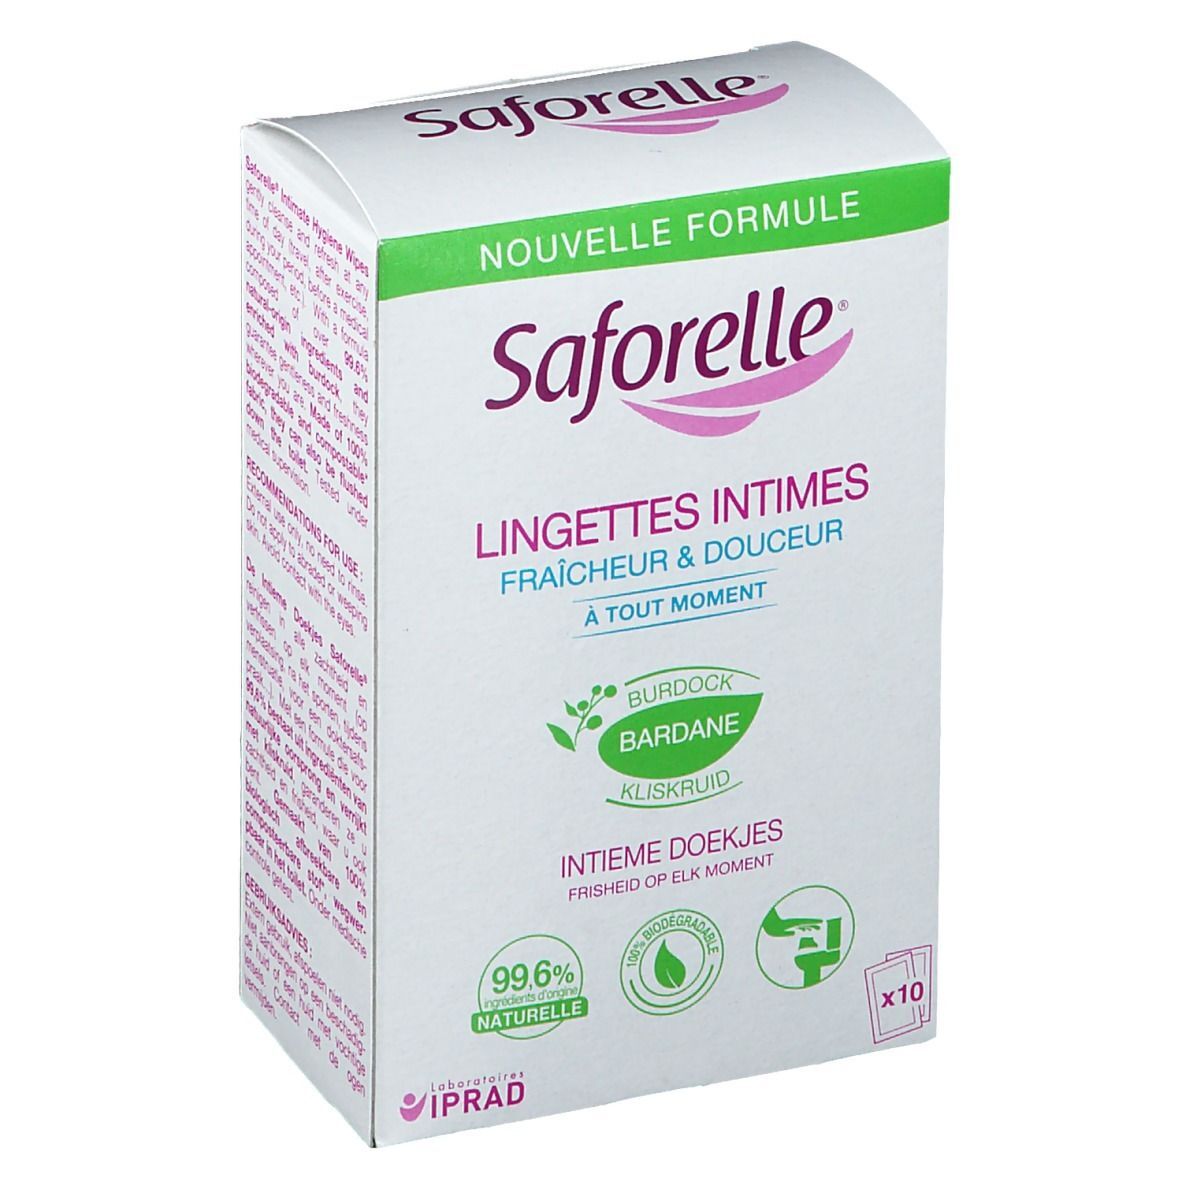 Saforelle® Lingettes intimes sachets individuels pc(s) lingette(s)